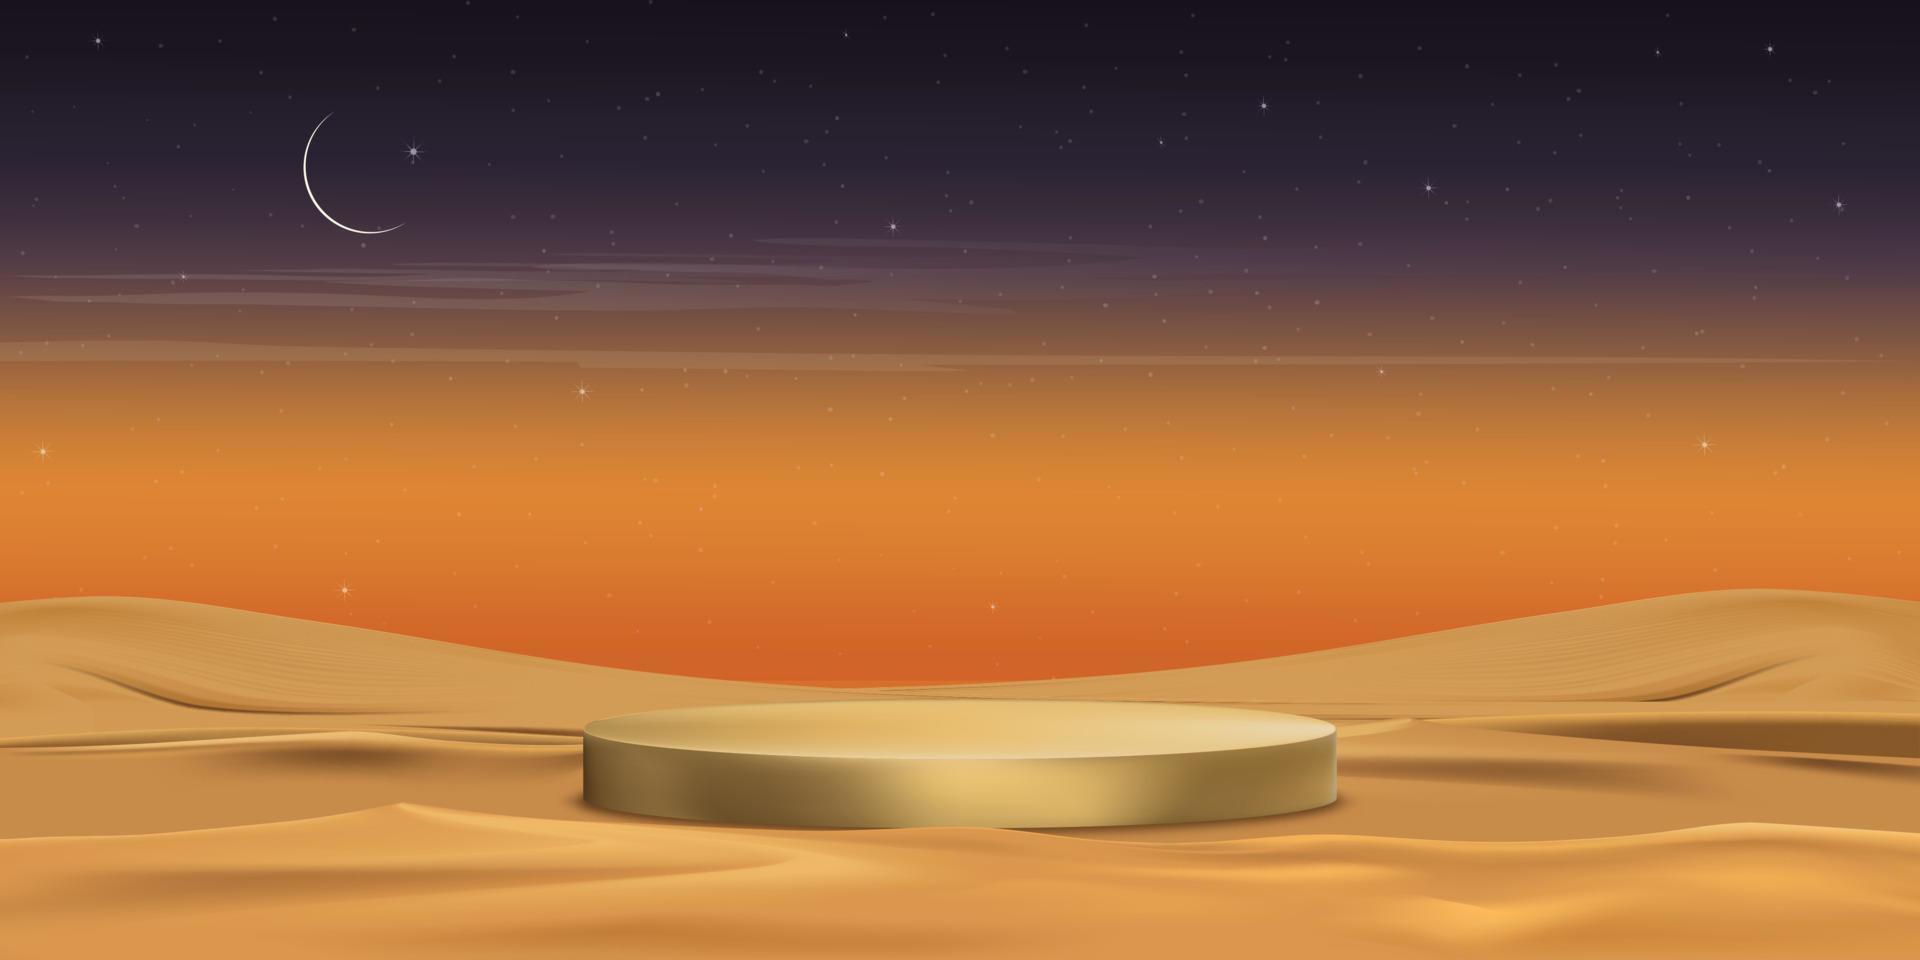 islamisches 3d-podium mit wüstenlandschaft mit sanddünen, halbmond, stern auf orangefarbenem sonnenunterganghimmelshintergrund, islamisches banner für produktpräsentation, ramadan, eid al adha, eid mubarak, eid el kabir vektor